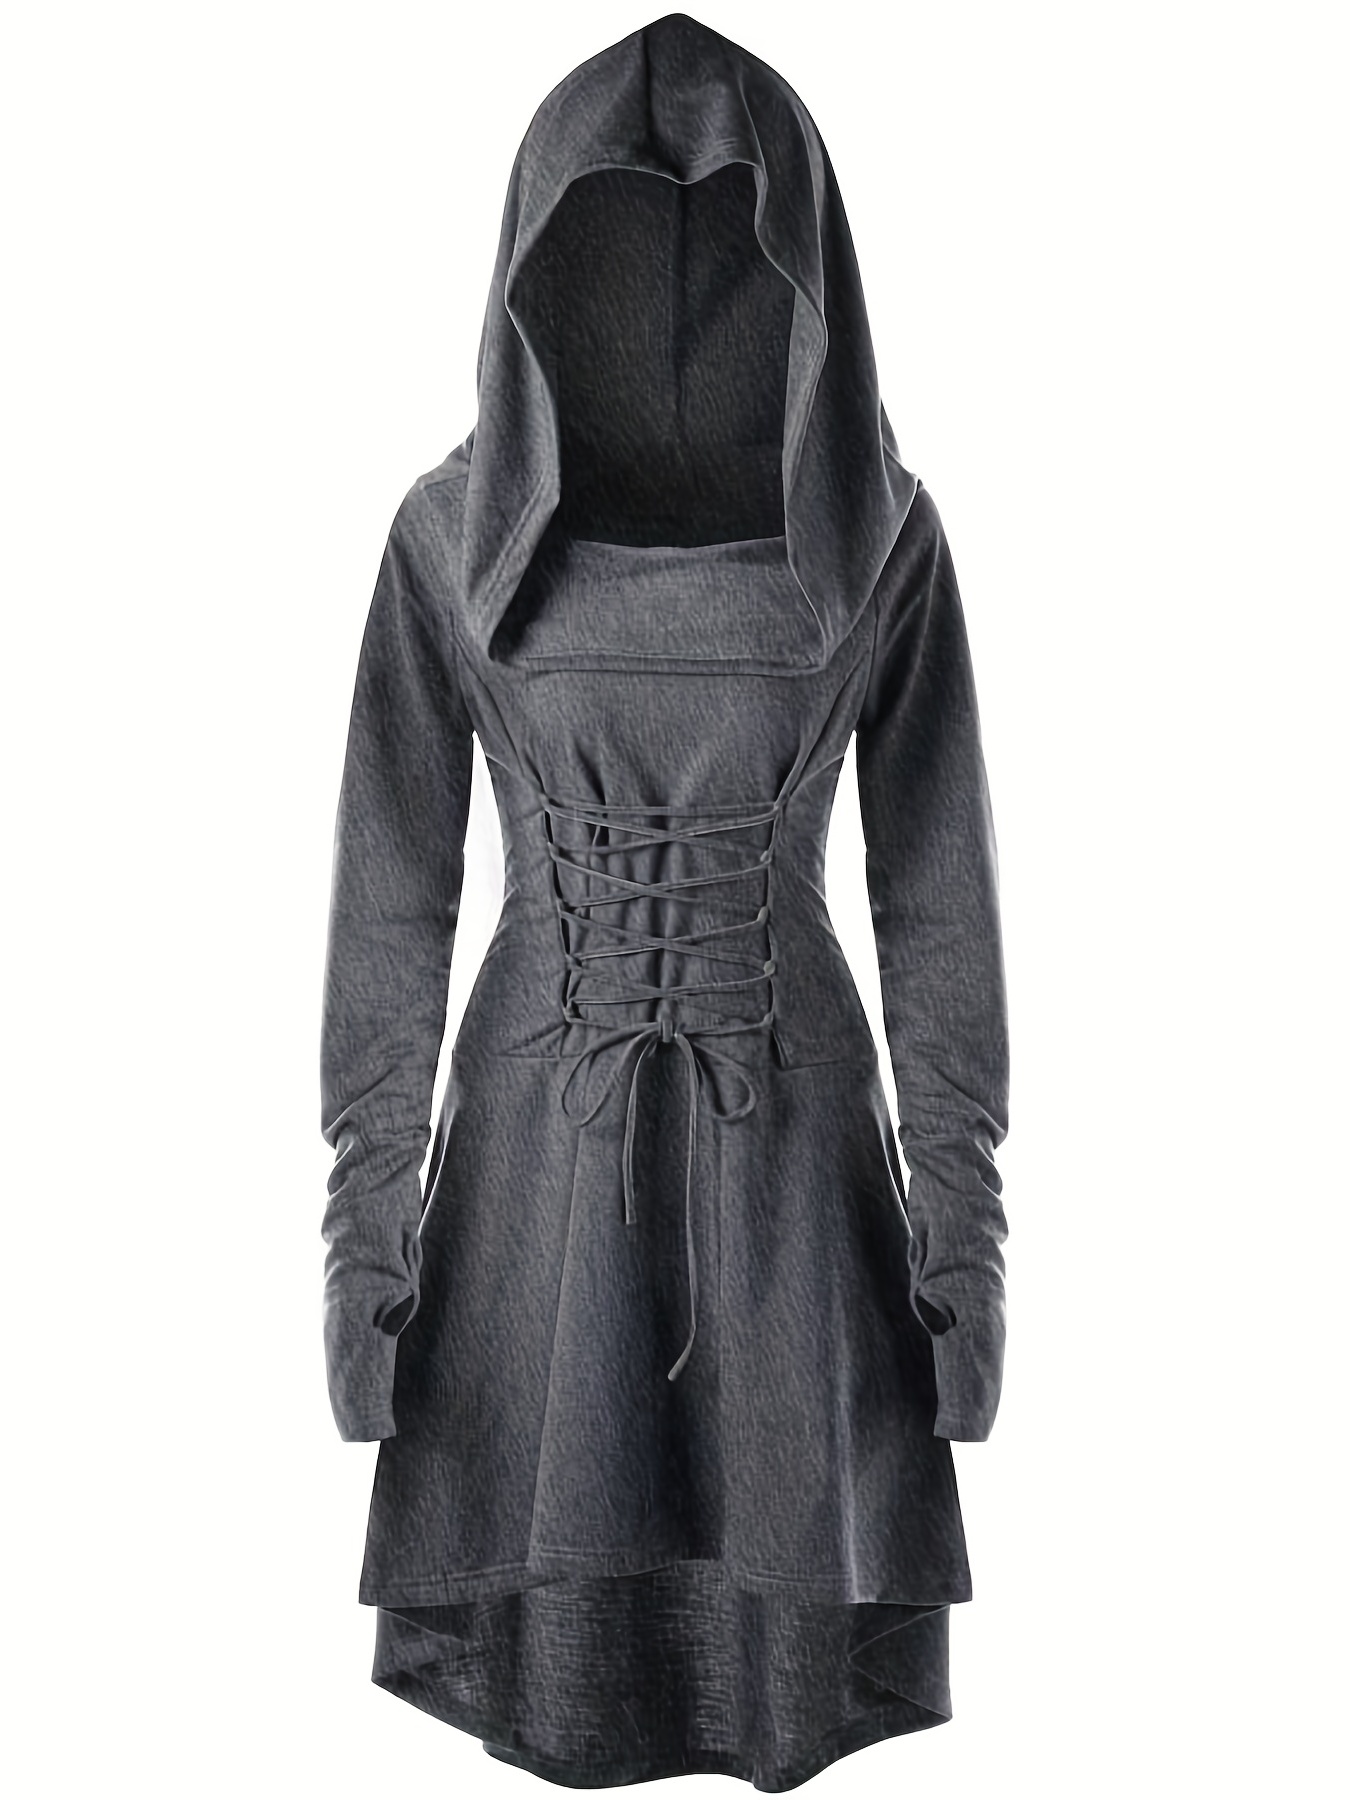 Disfraz de bruja negra para mujer, accesorios de disfraz de vampiro de  Halloween (incluye capa de malla con capucha, vestido, guantes)